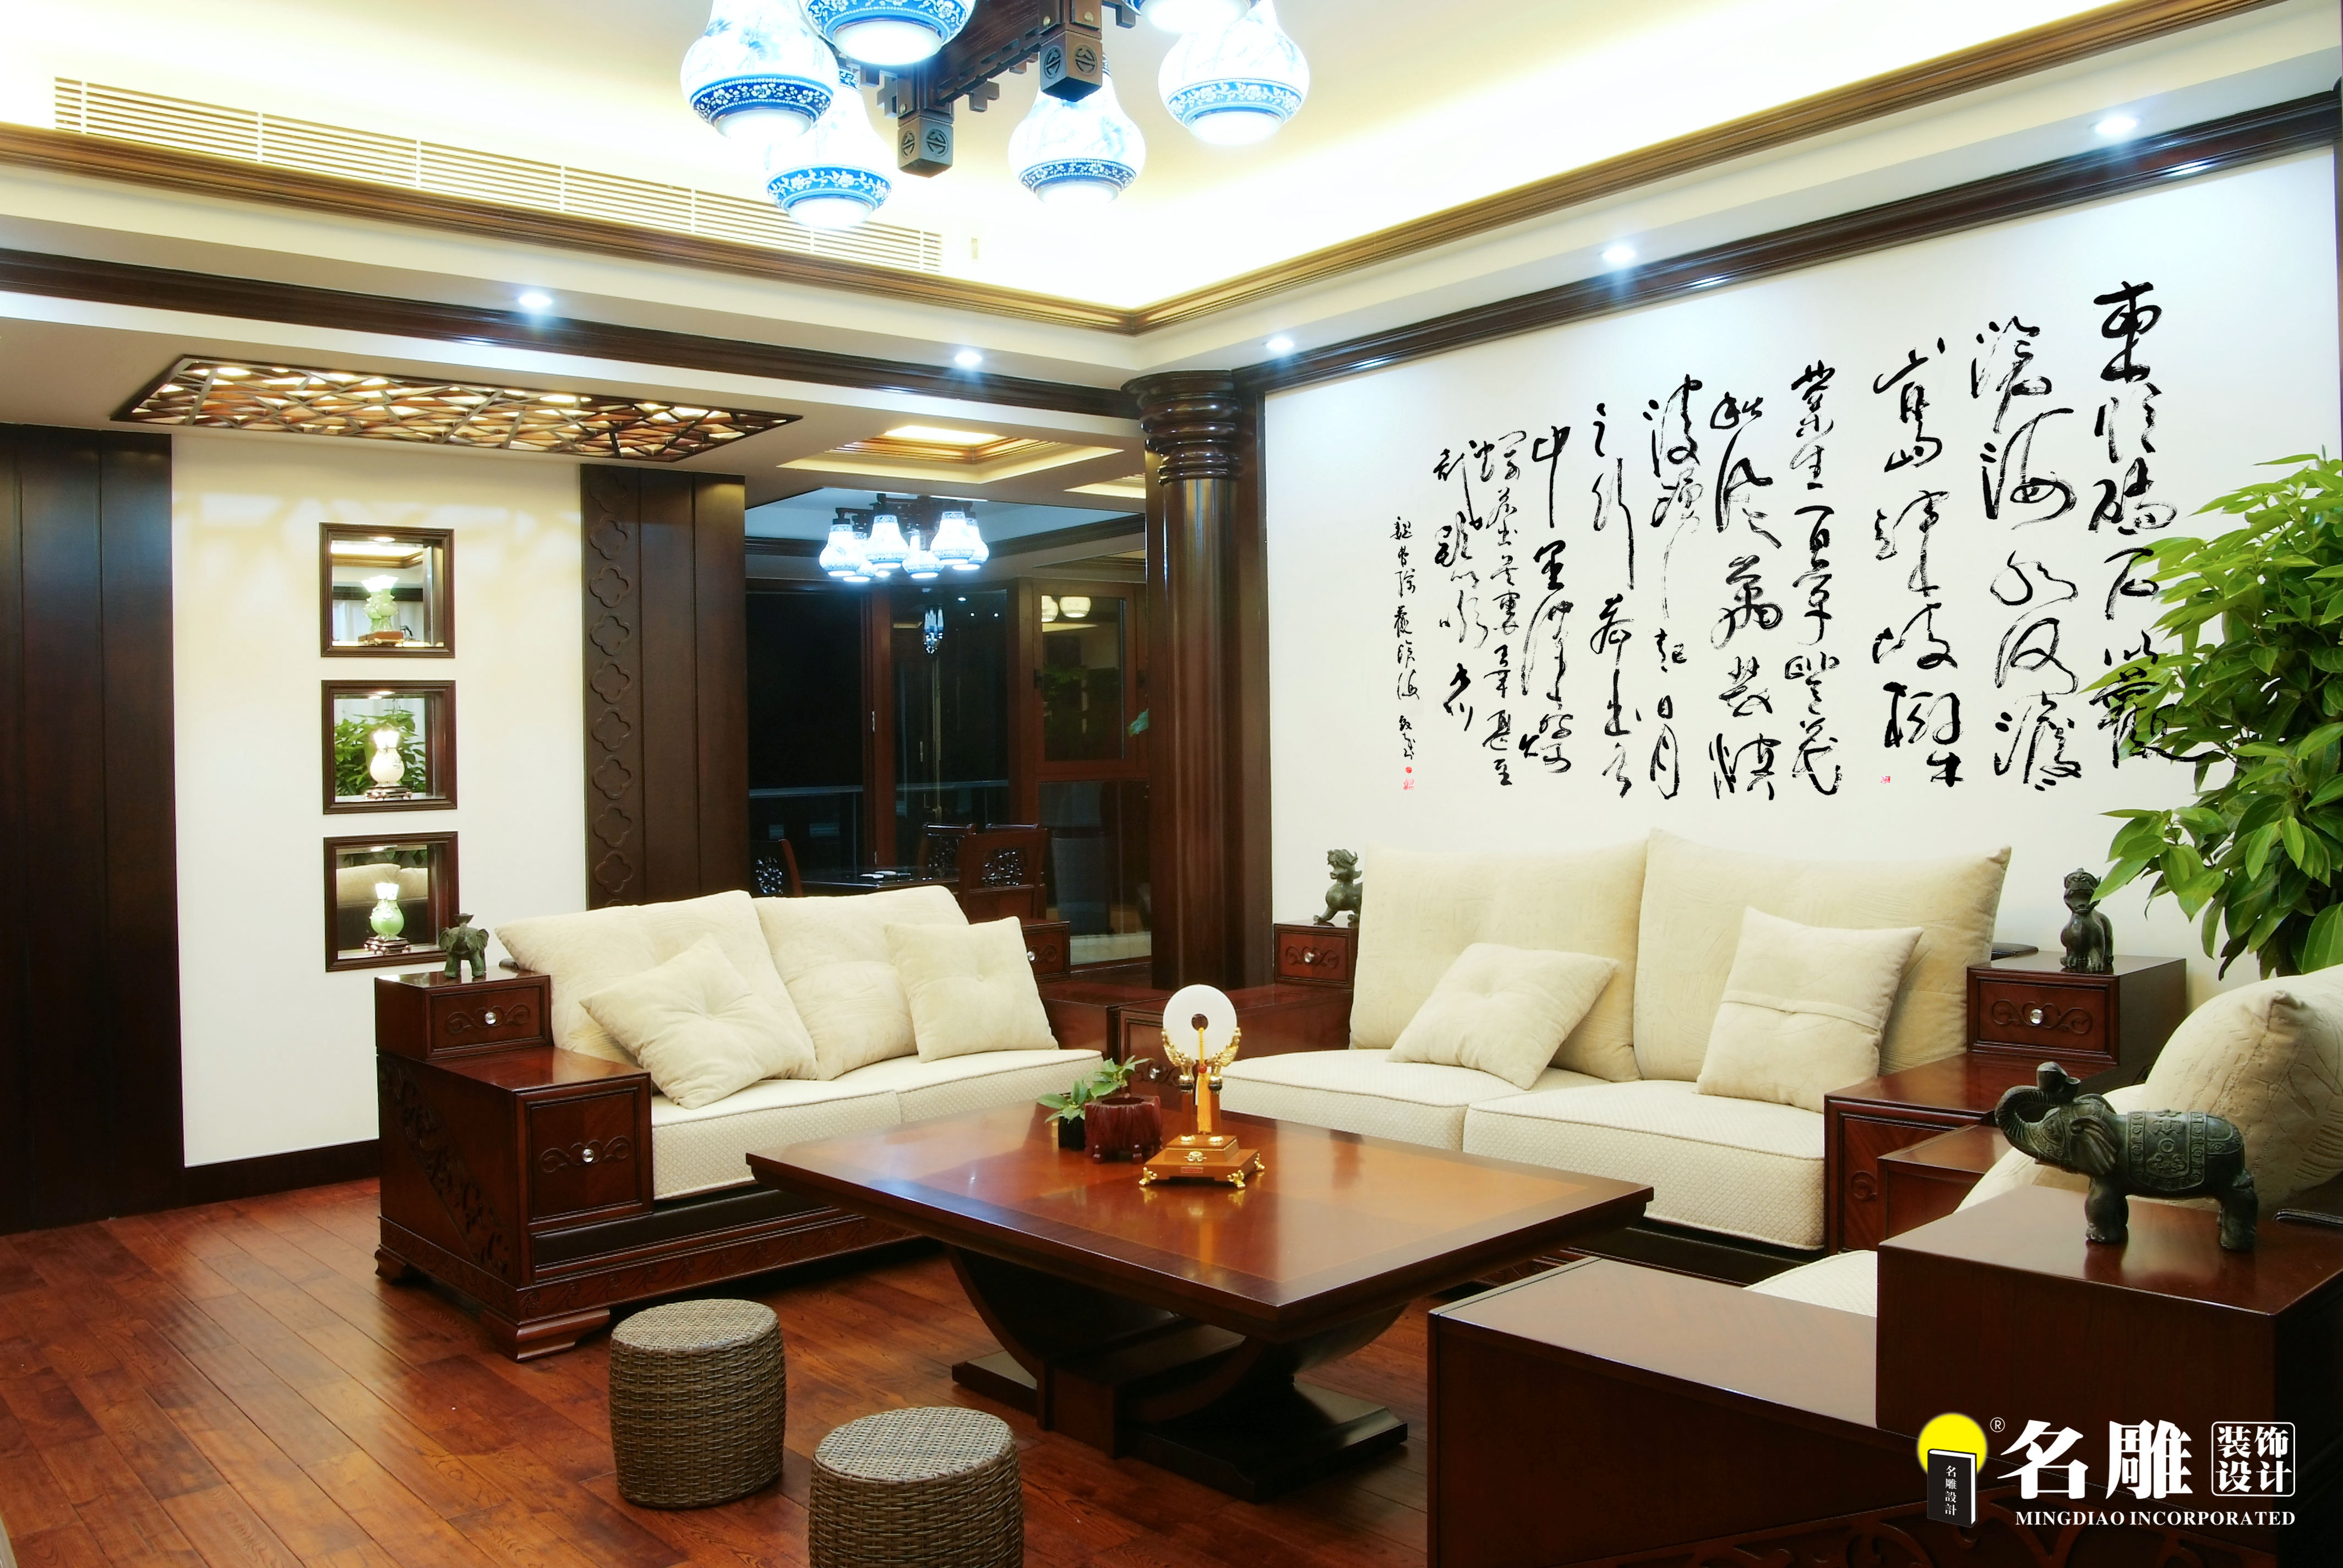 二居 中式 文艺青年 东方韵味 名雕装饰 客厅图片来自名雕装饰设计在中式风格-135平二居室雅居装修的分享